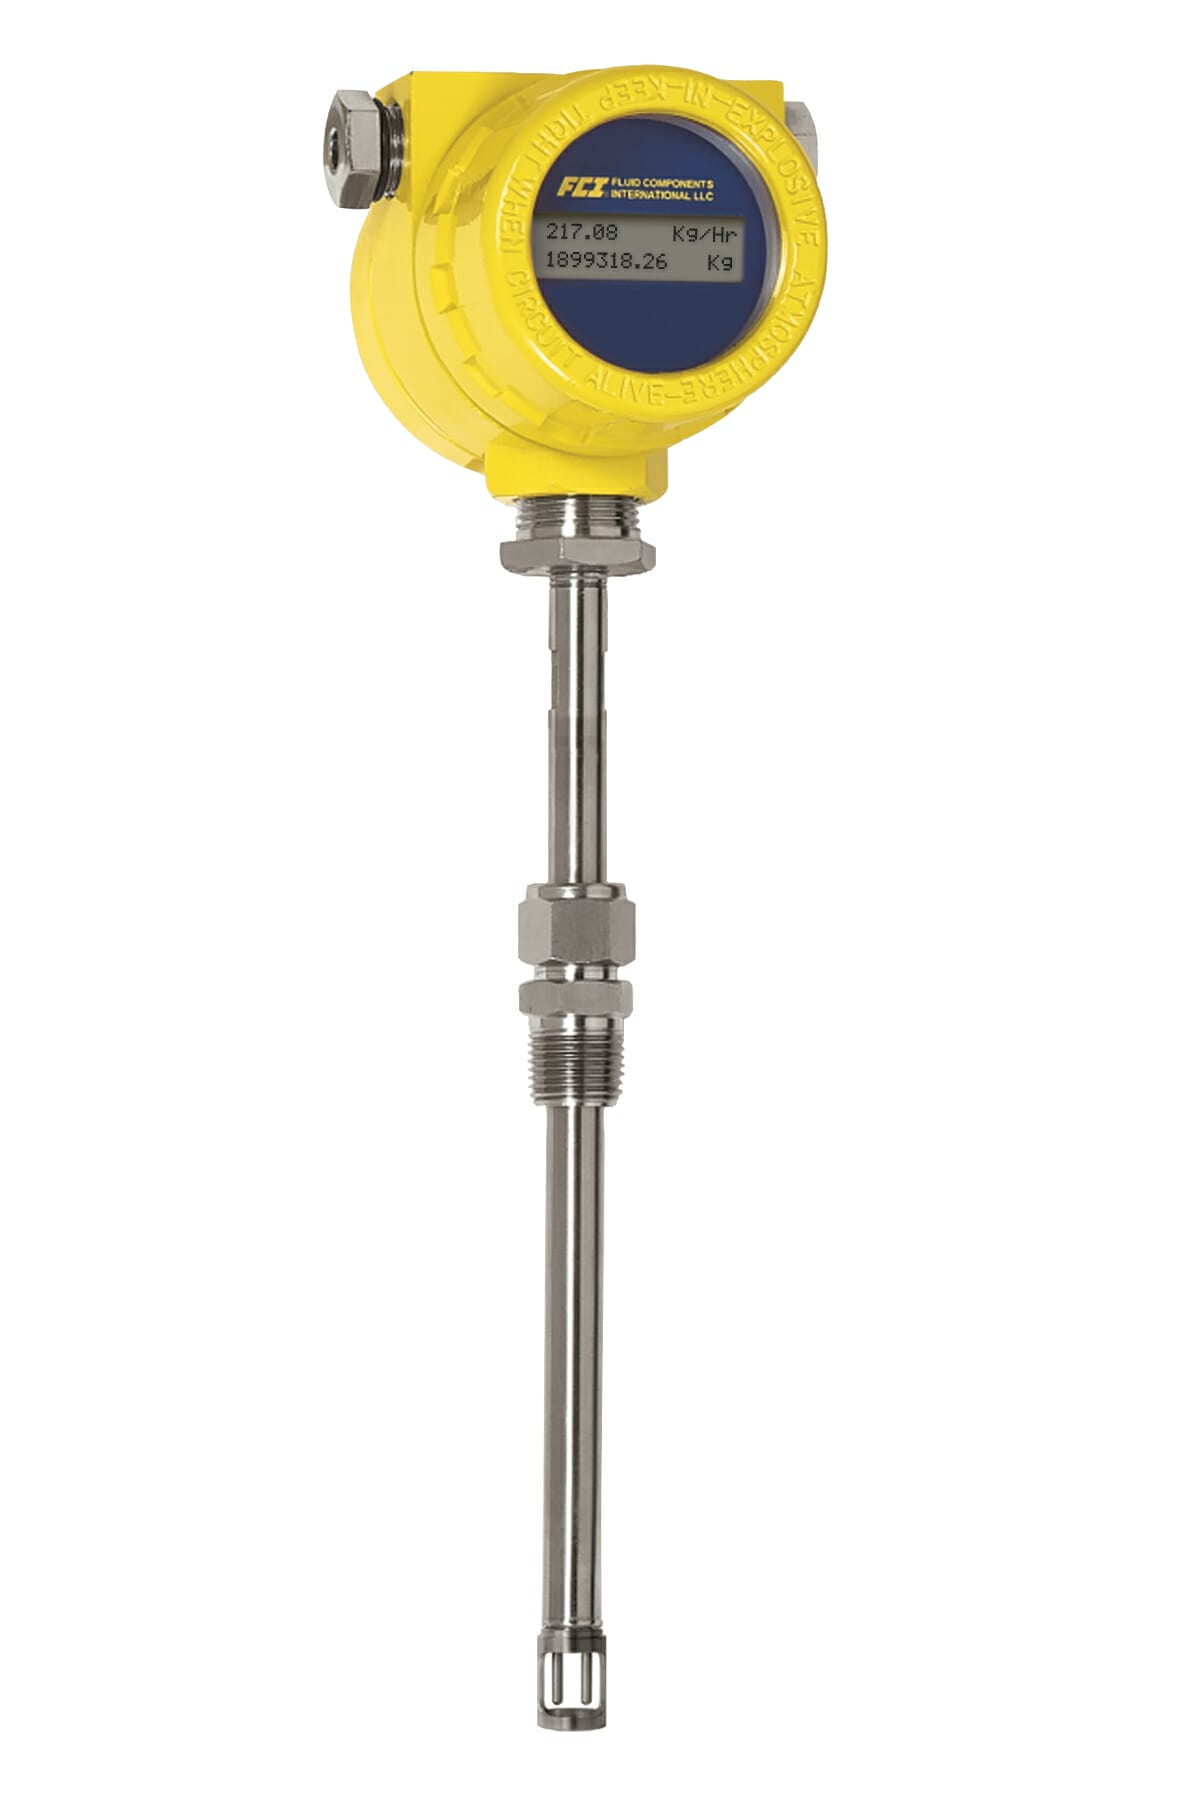 ST51 termisk flowmåler, gult hus med display, gjengetilkobling og sensor for enkel montasje.